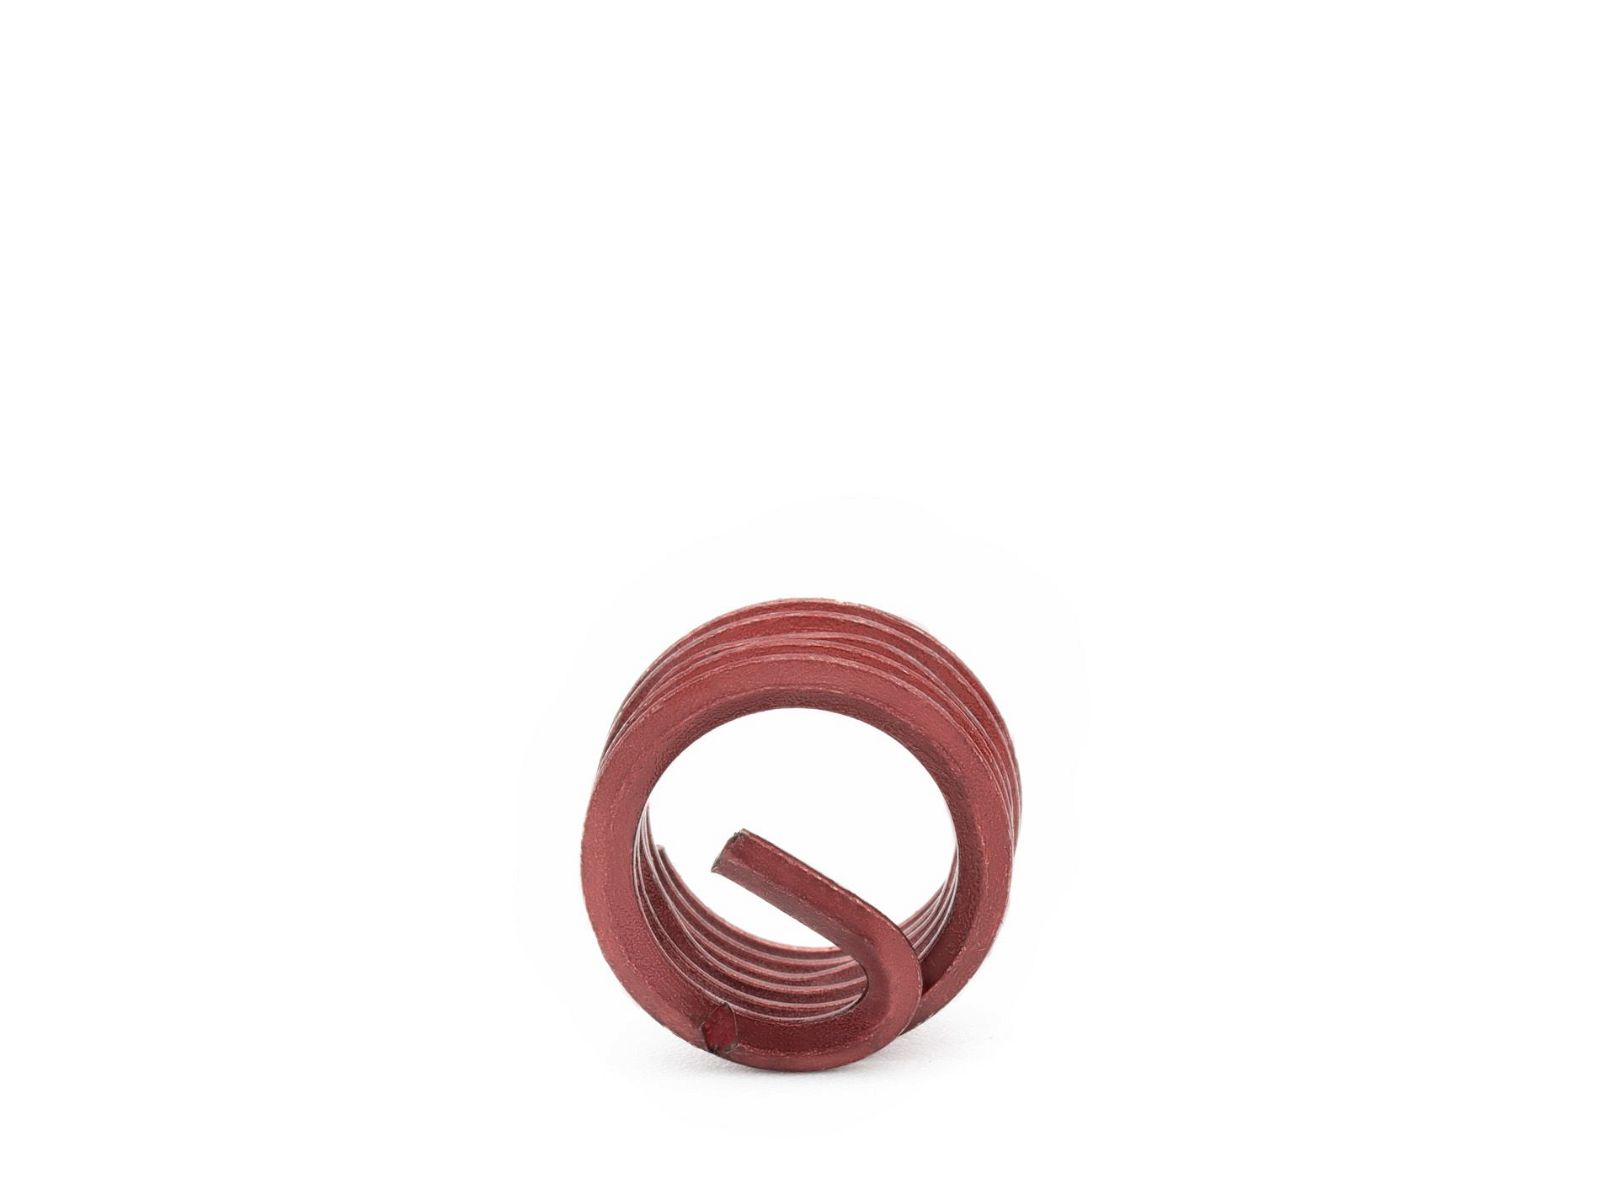 BaerCoil Wire Thread Inserts BSF 1/4 x 26 - 1.0 D (6.35 mm) - screw grip (screw locking) - 100 pcs.